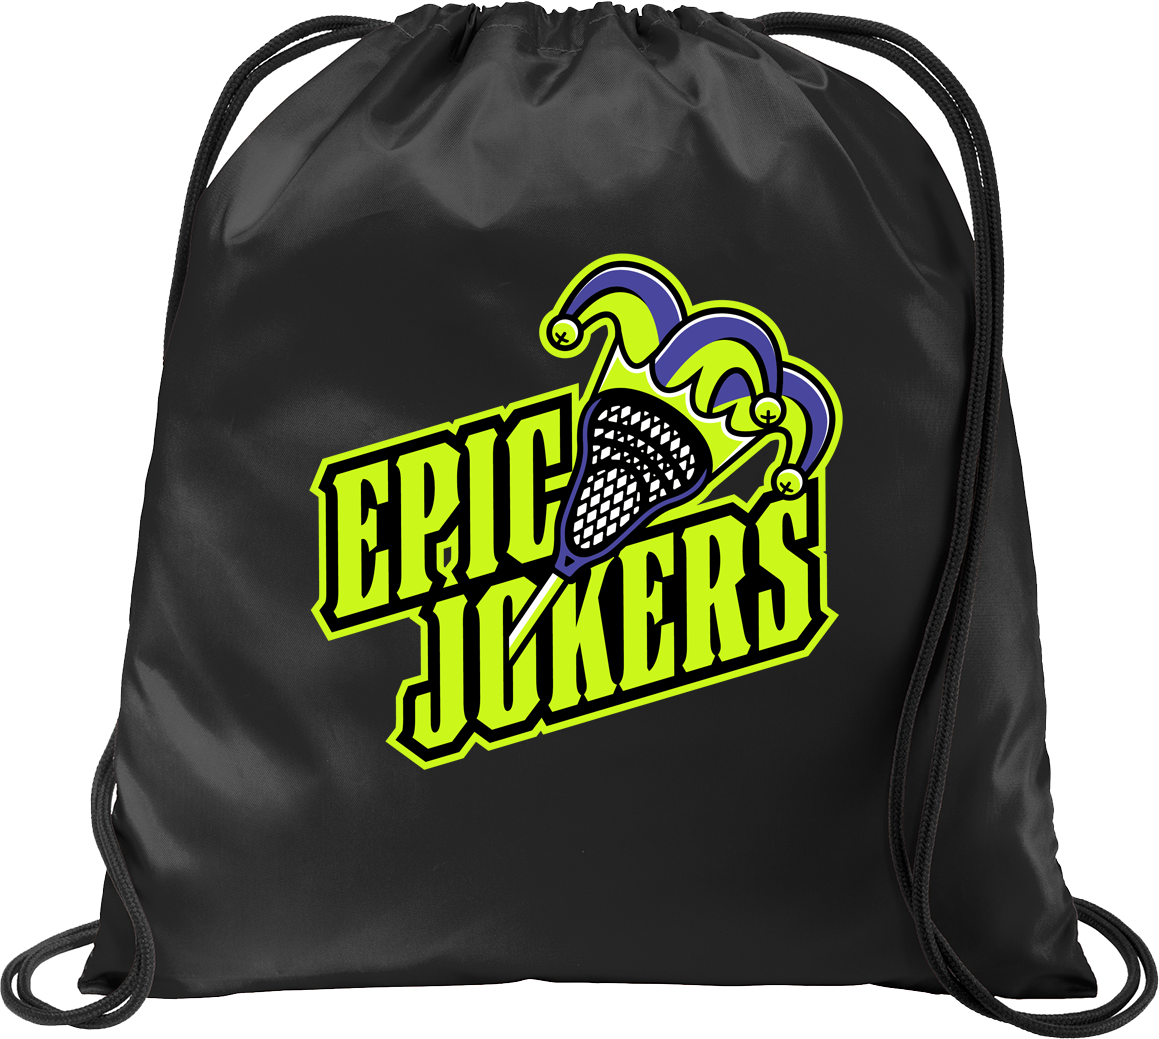 Epic Jokers Lacrosse Black Cinch Pack